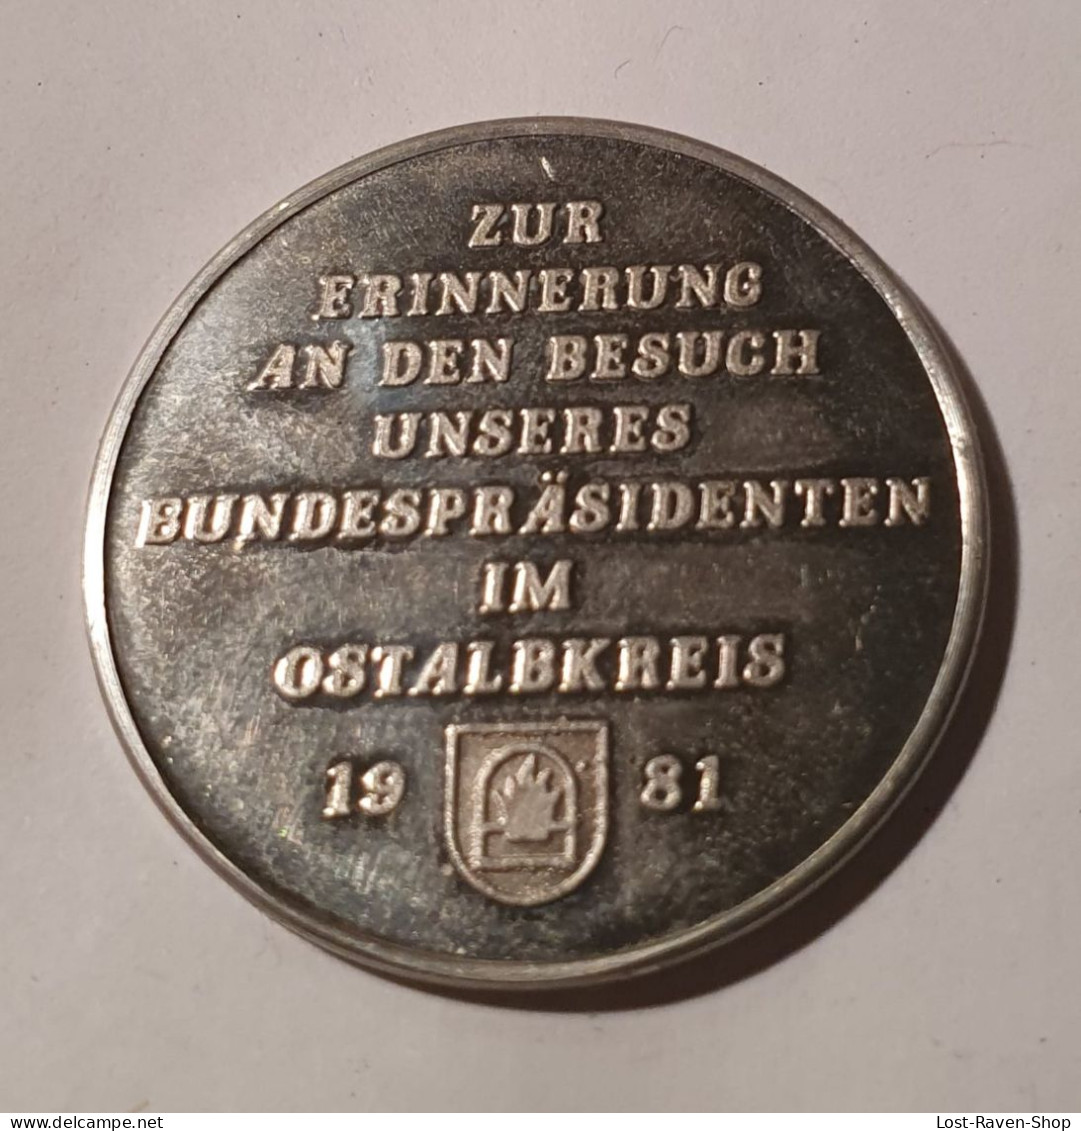 Zur Erinnerung An Den Besuch Unseres Bundespräsidenten Im Ostalbkreis 1981 - Karl Carstens - Monedas Elongadas (elongated Coins)